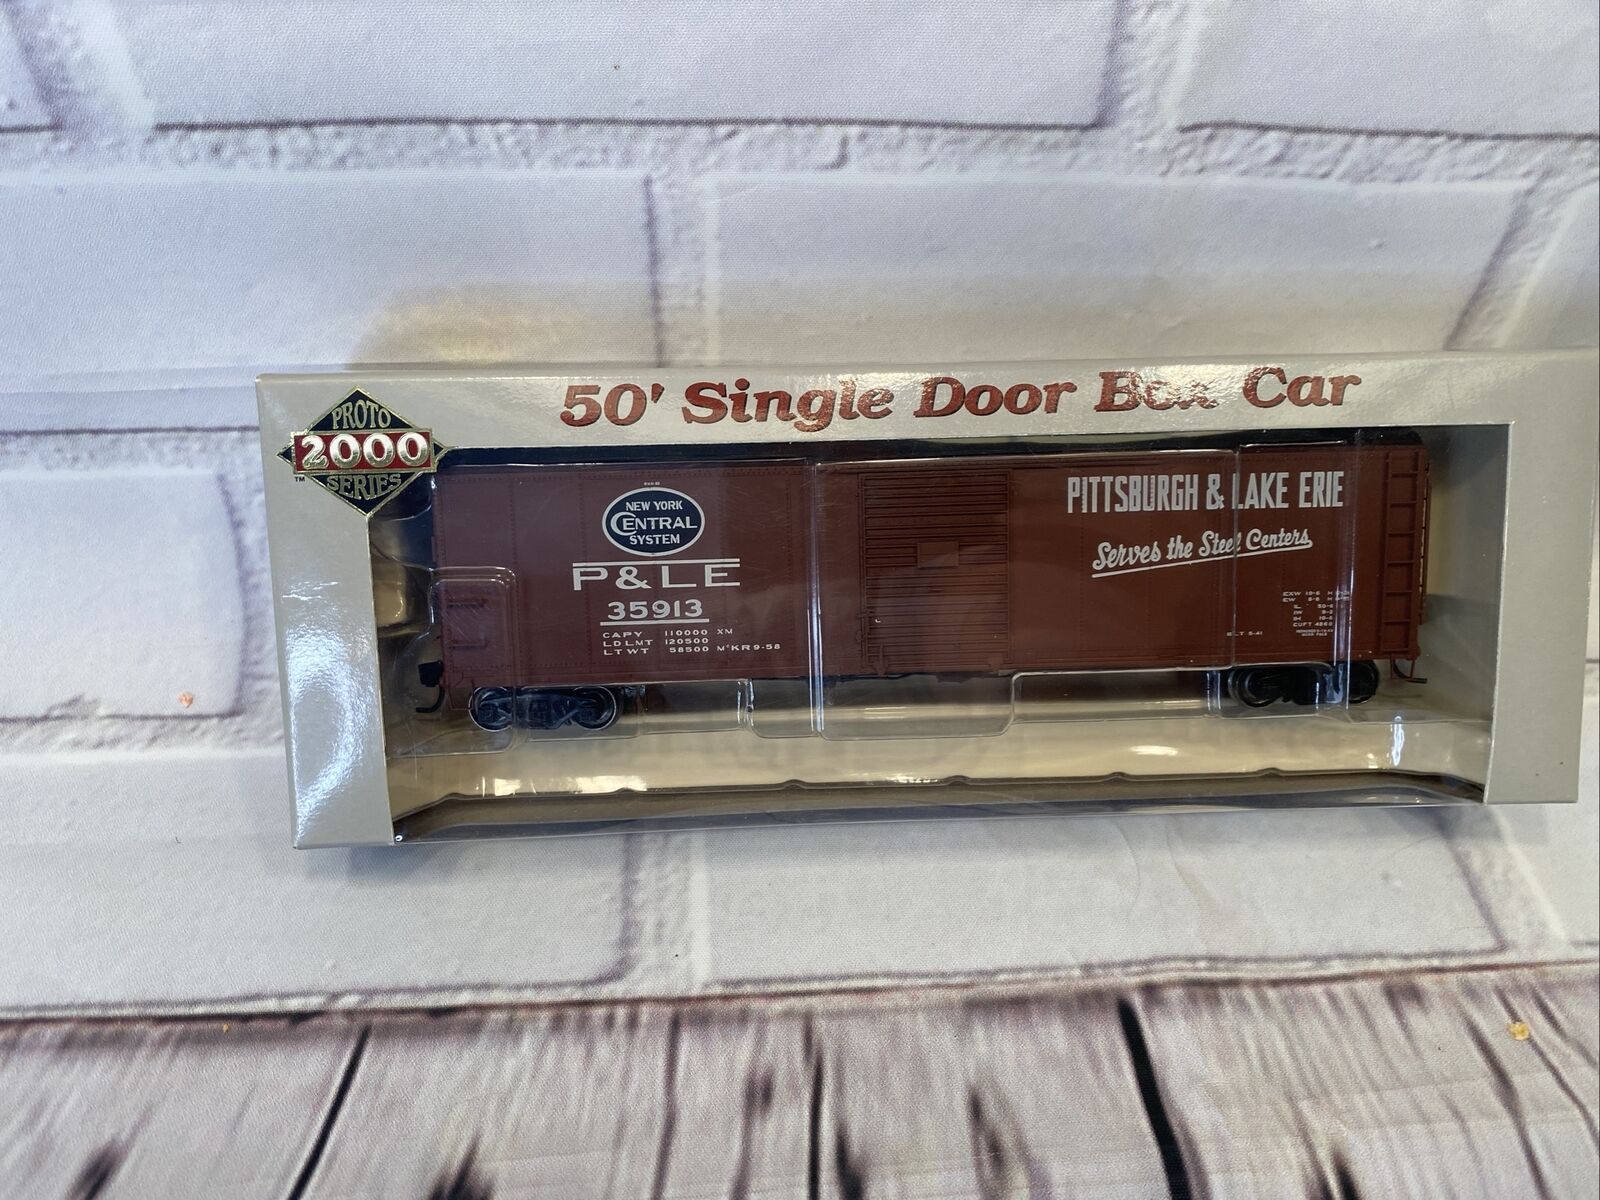 Proto 2000 50’ single door Box car P&LE # 35913